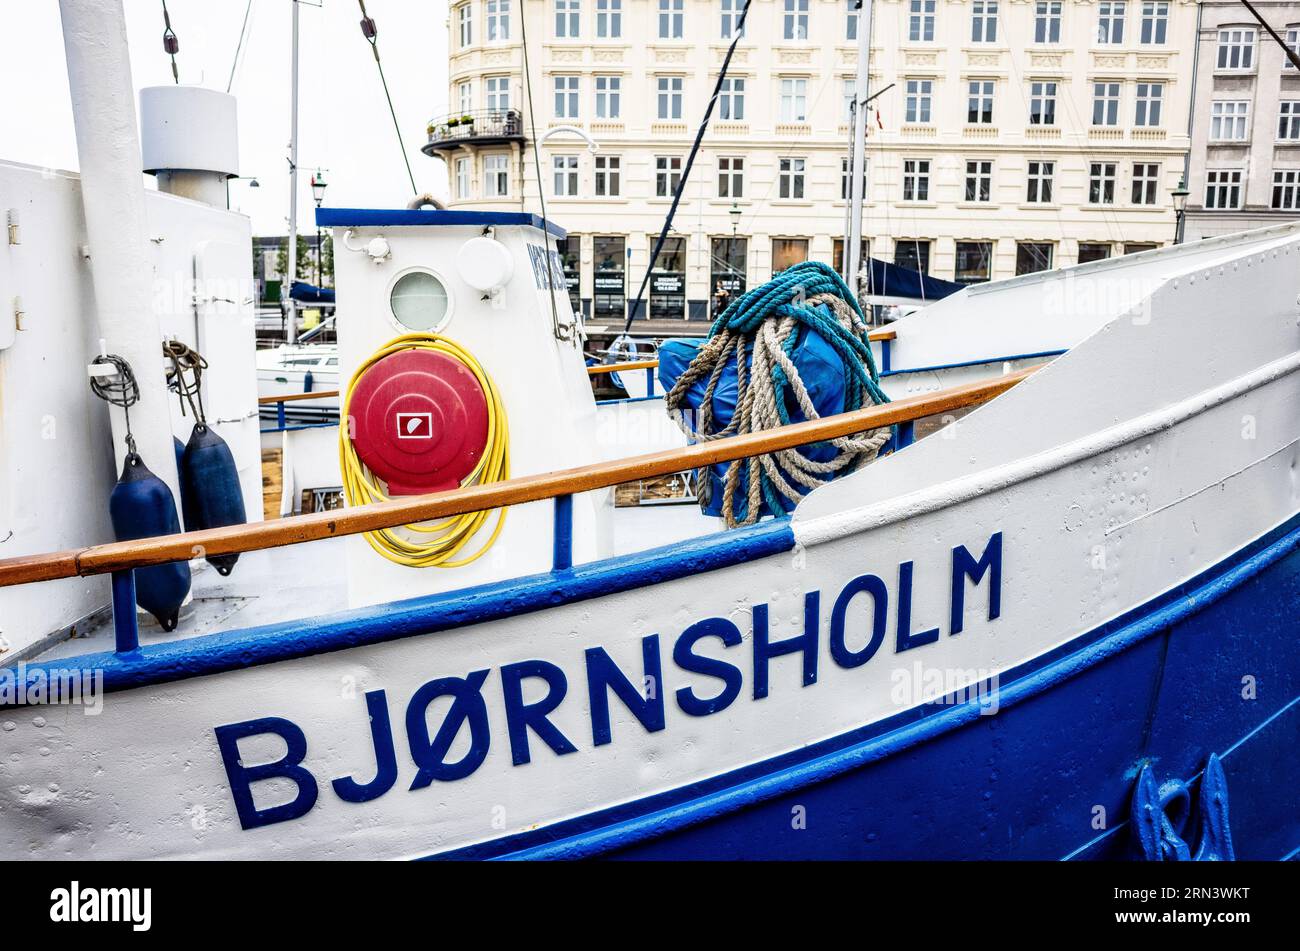 COPENAGHEN, Danimarca — la nave Bjornsholm attraccata a Nyhavn. Nyhavn, lo storico porto di Copenaghen, è visto animato da attività. Un tempo porto commerciale dove attraccavano navi da tutto il mondo, Nyhavn è ora un luogo di ritrovo culturale pieno di ristoranti, bar e case tradizionali, segnando la sua trasformazione da vivace centro marittimo a principale attrazione turistica. Foto Stock